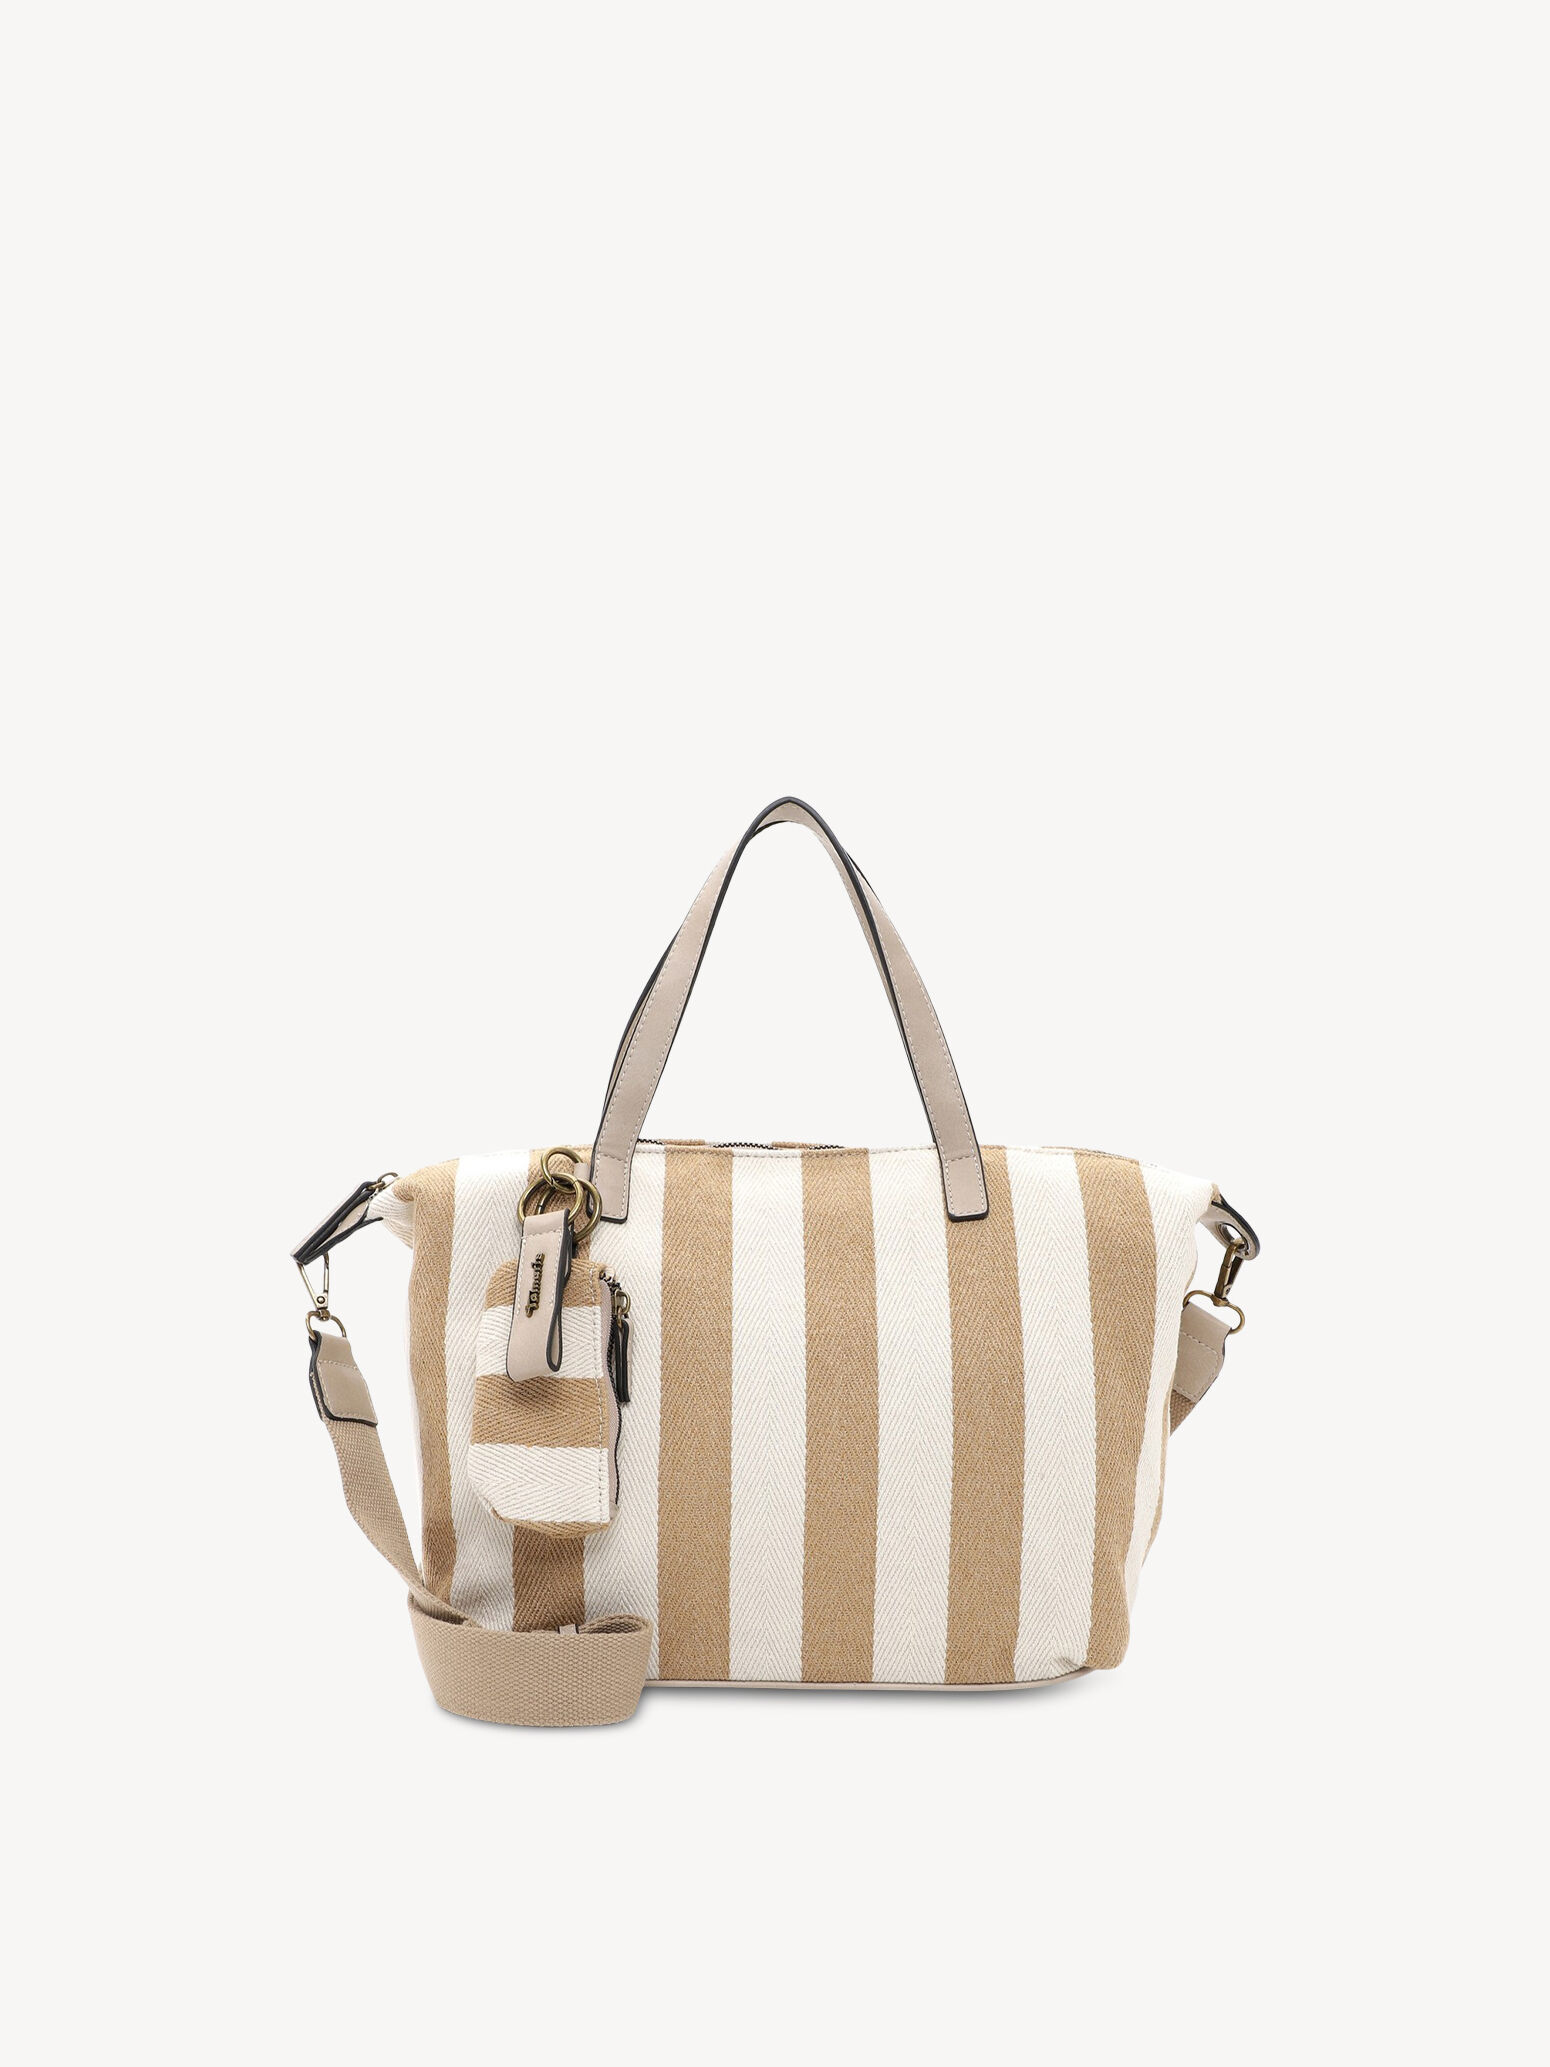 Buy Tamaris Handbags online now!